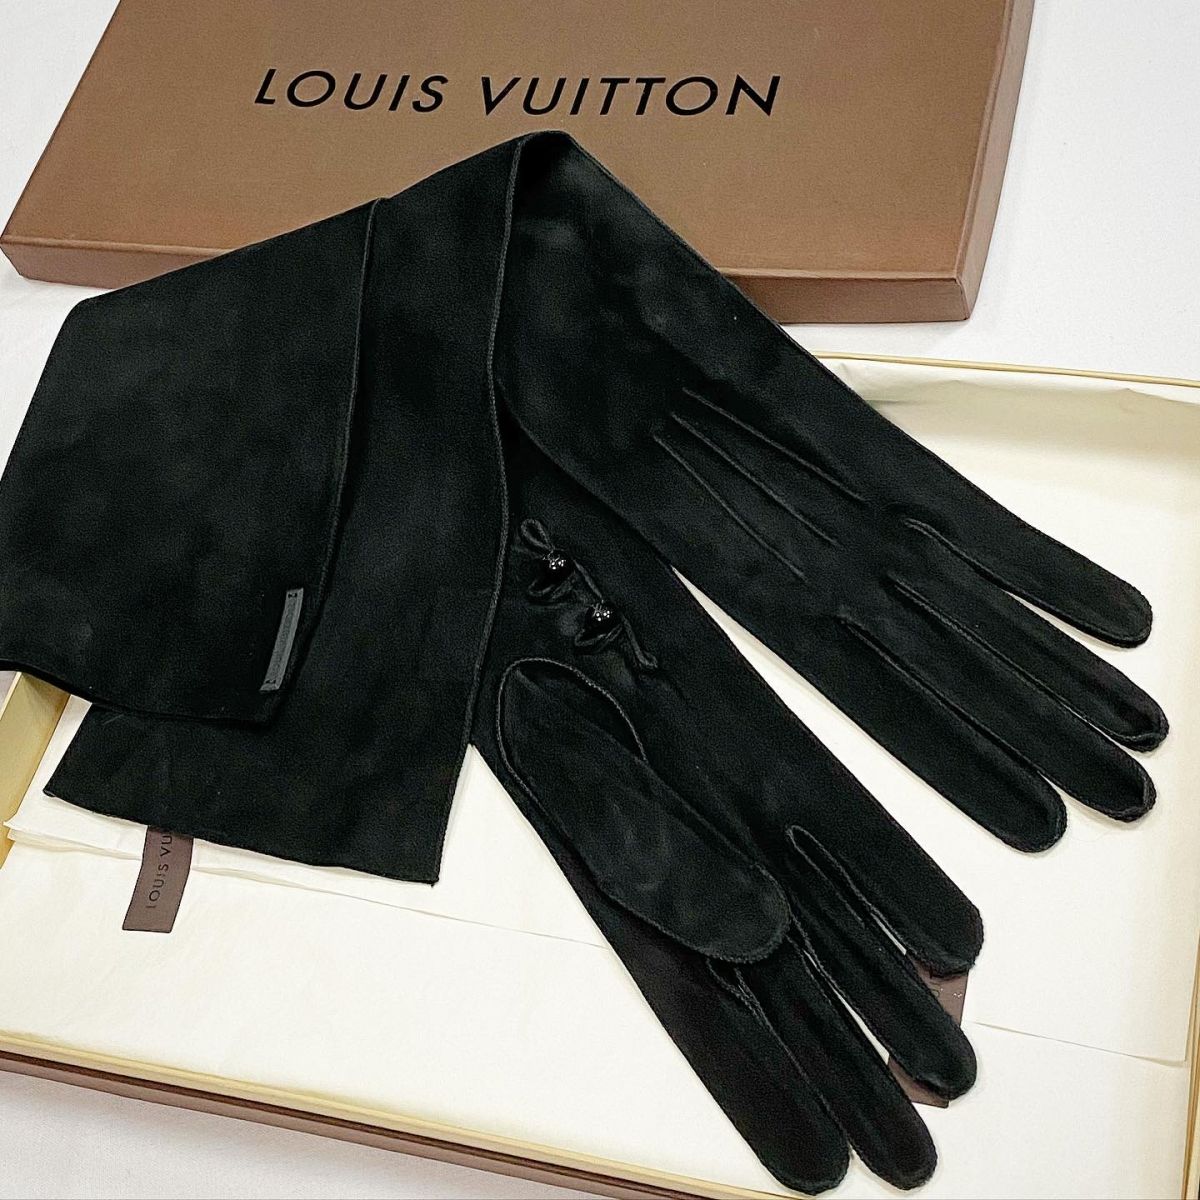 Перчатки / замша / Louis Vuitton  размер S цена 10 770 руб 